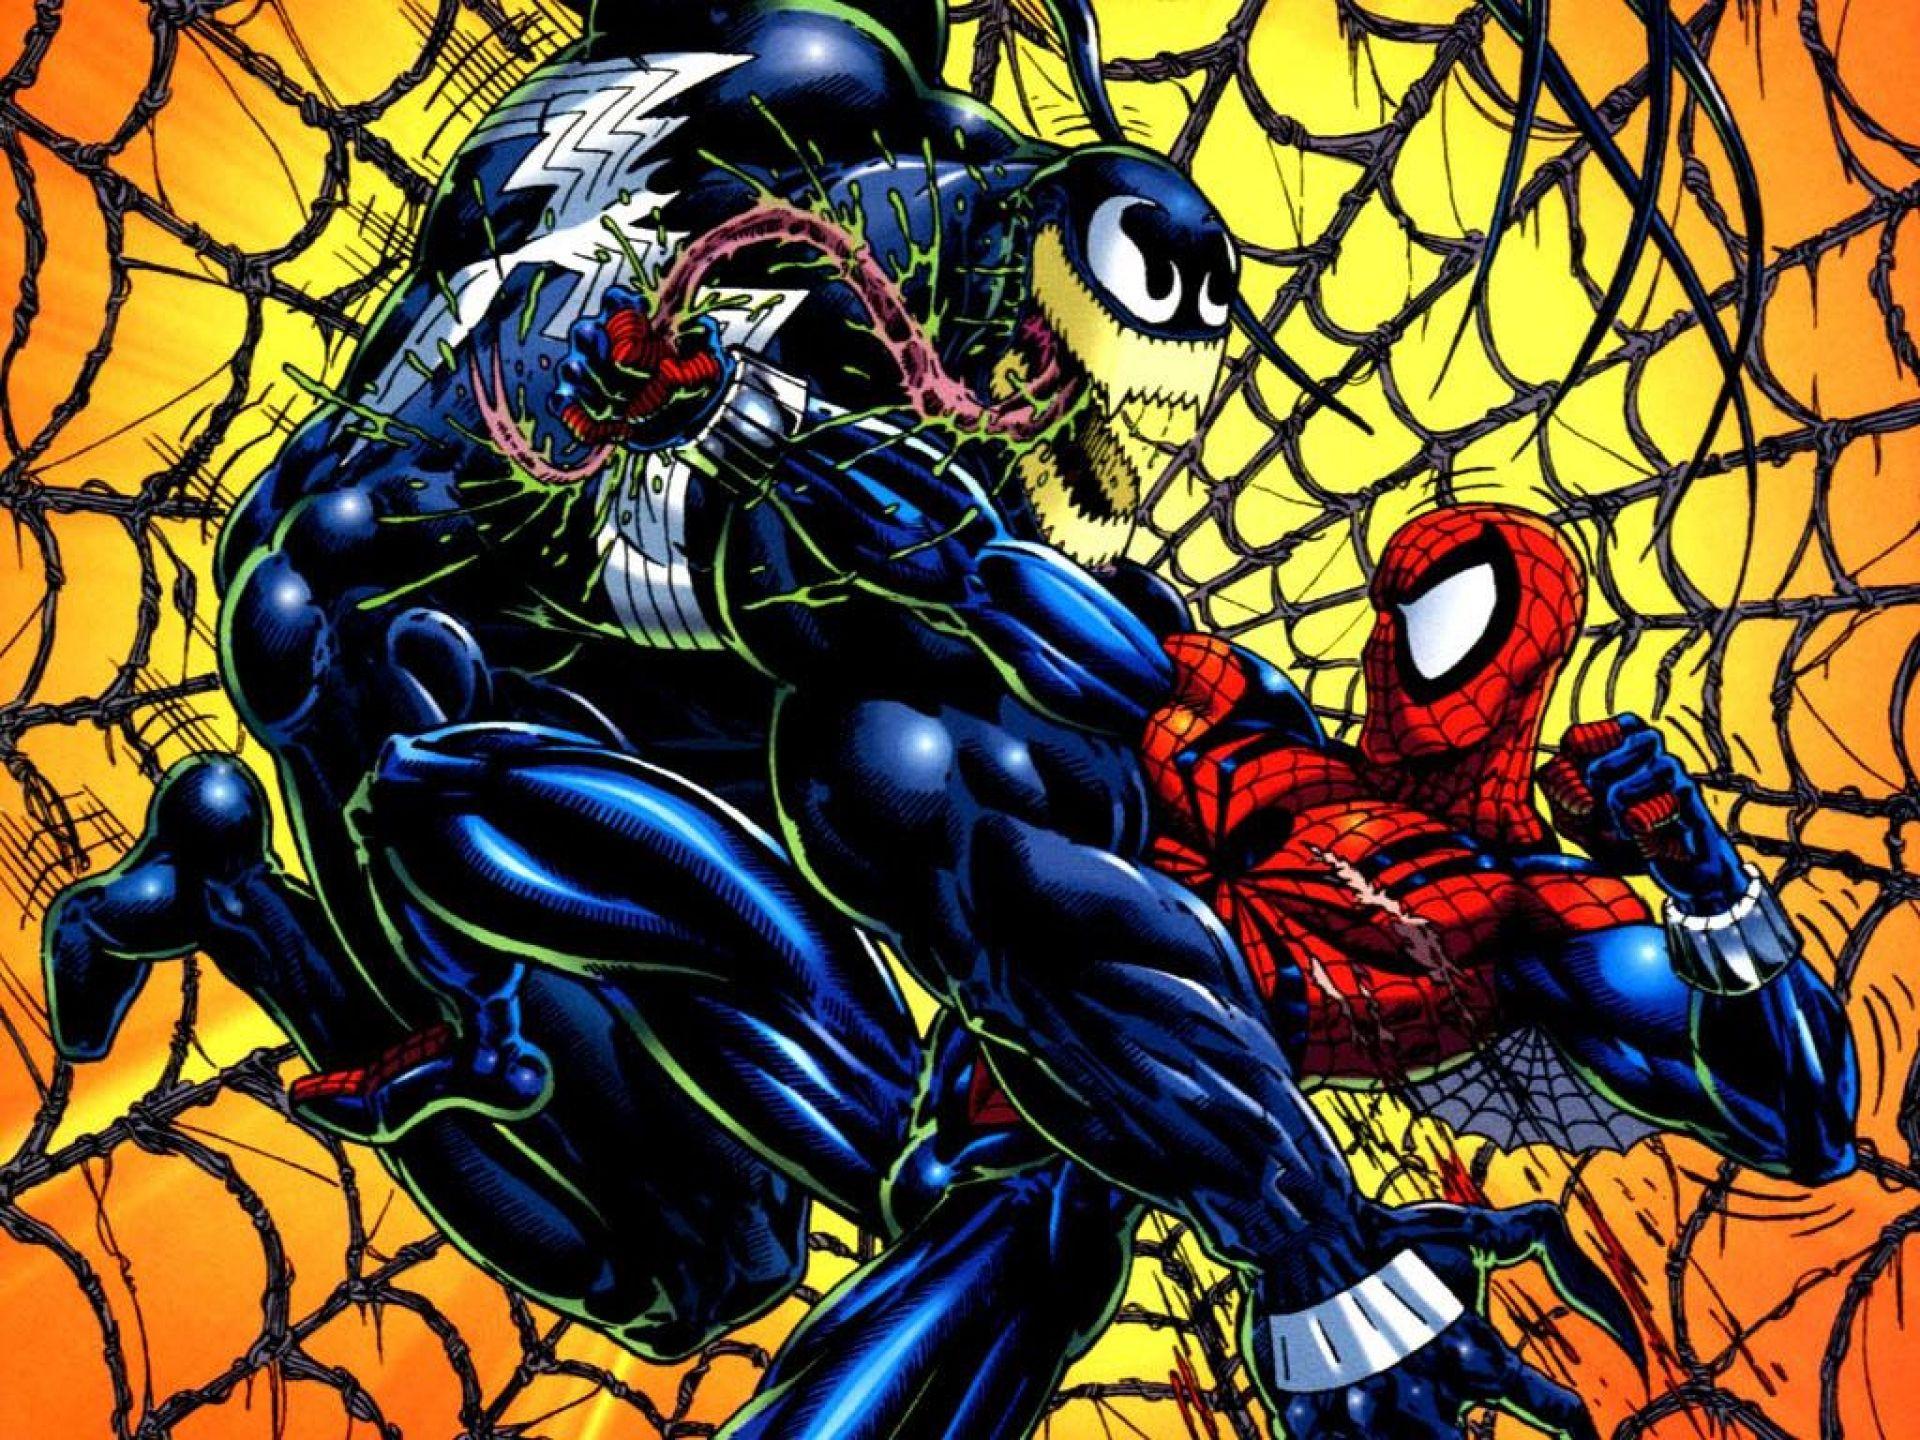 Spiderman vs Venom wallpaper and image, picture, photo